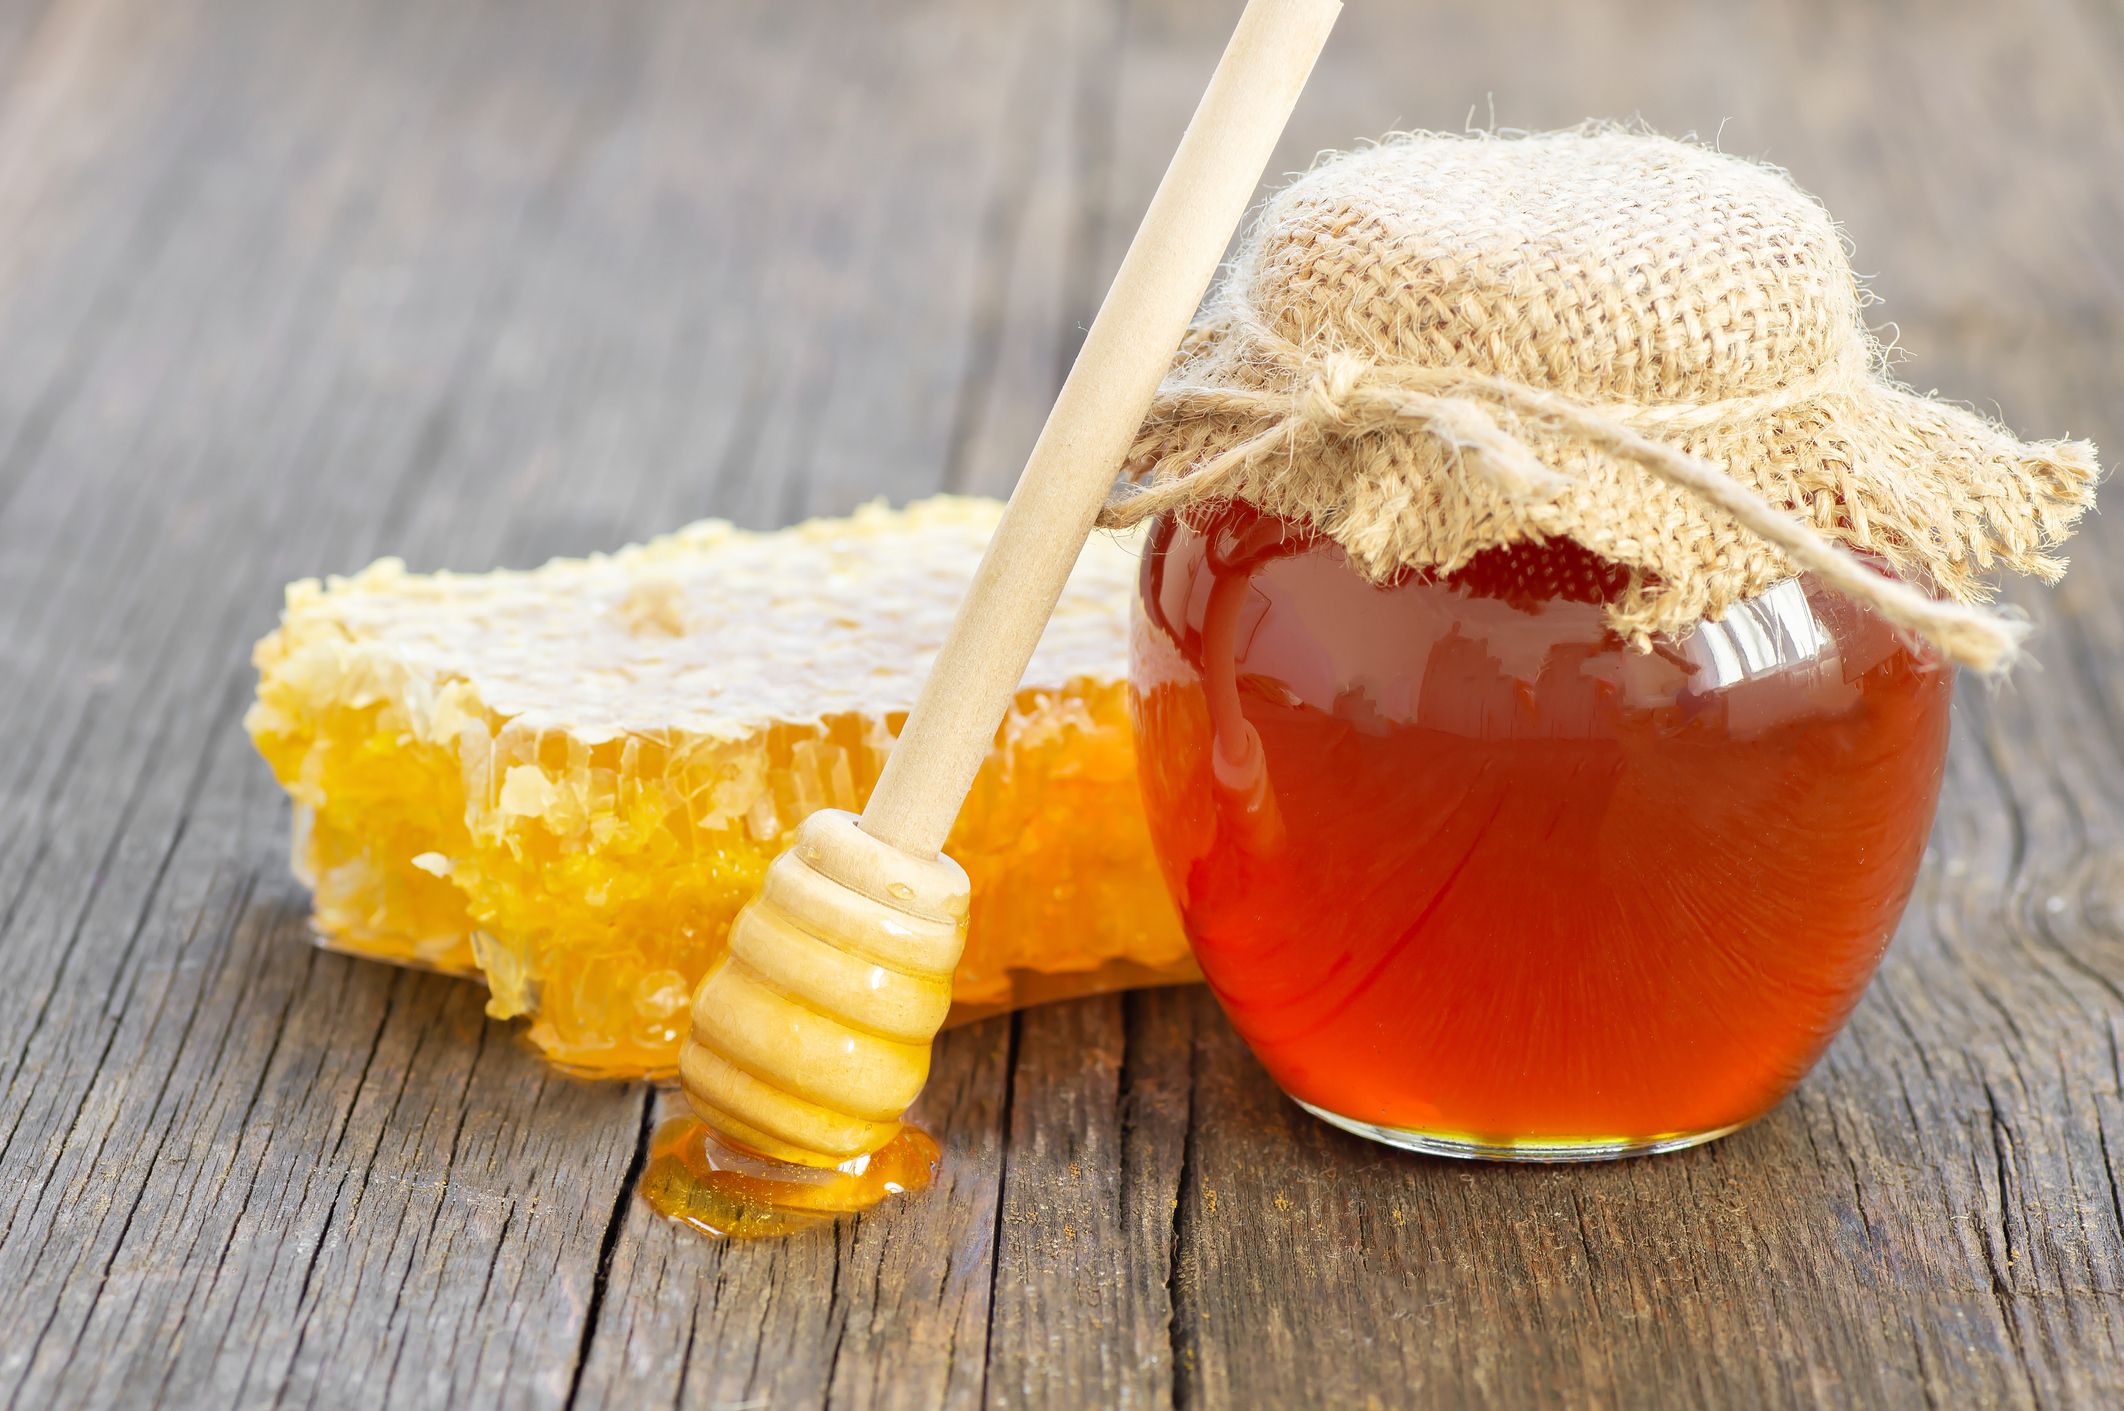 Honigglas mit Honigwabe